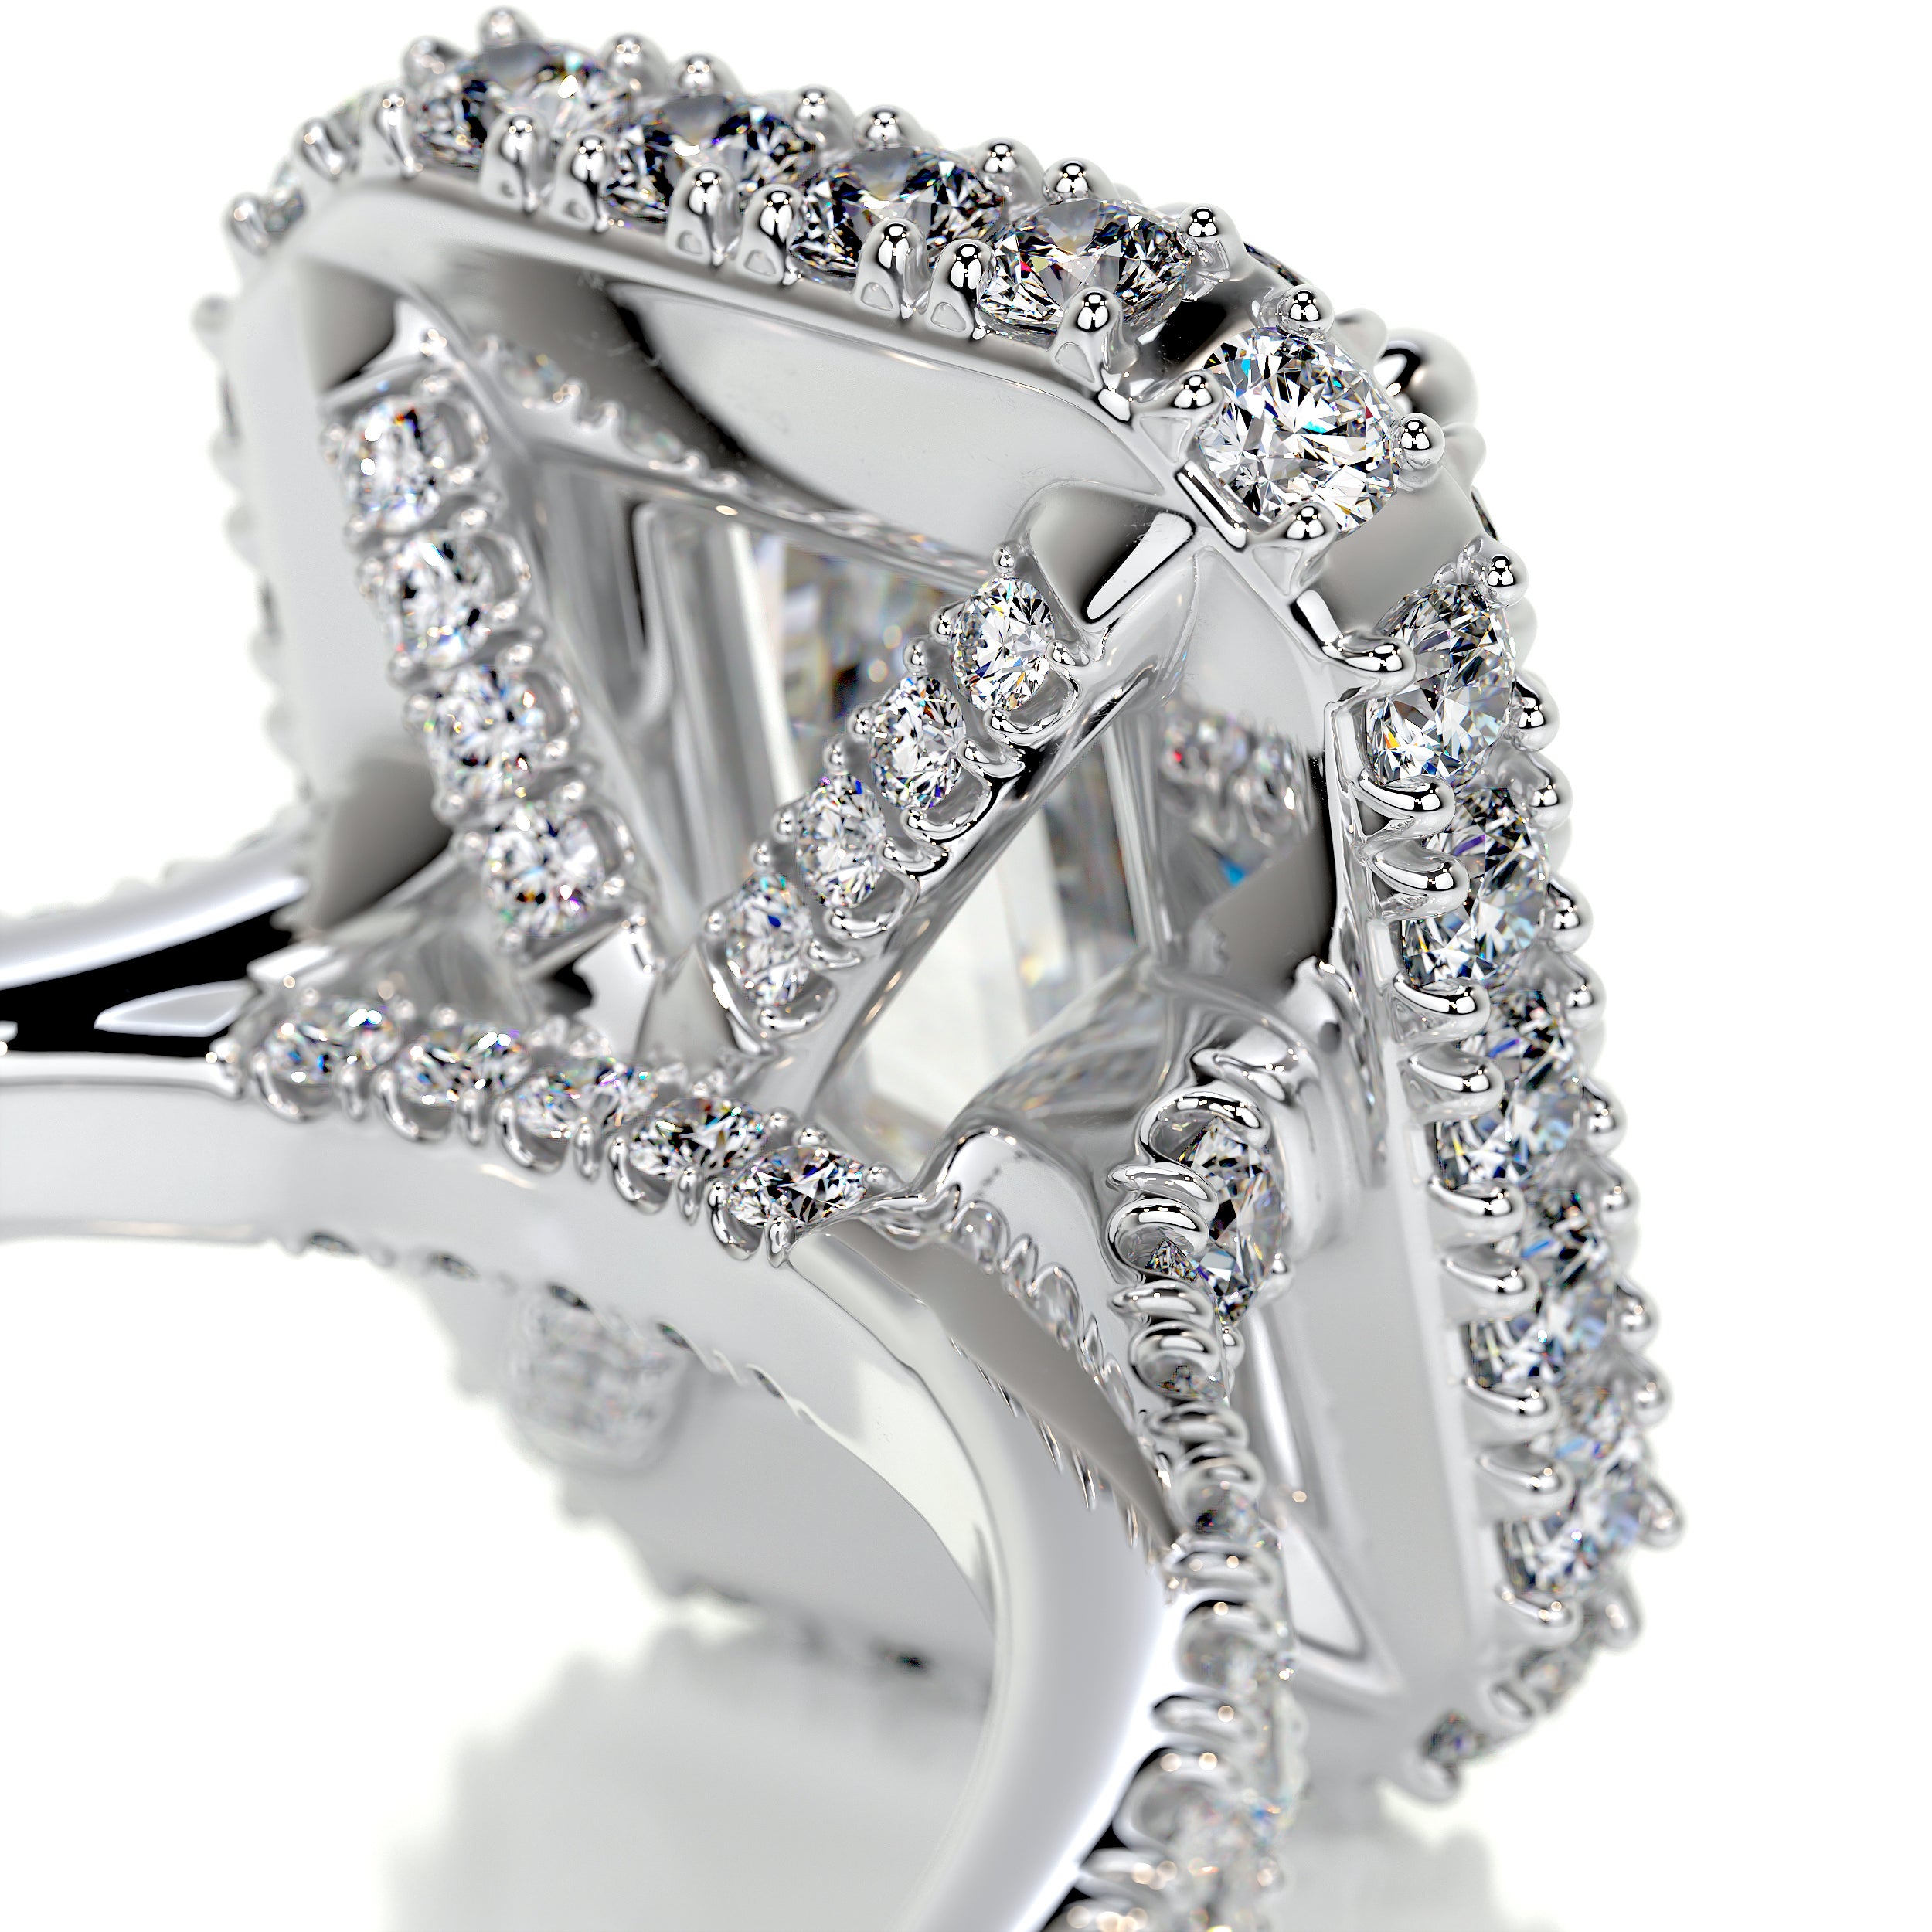 Lana Moissanite & Diamonds Ring   (2.5 Carat) -18K White Gold